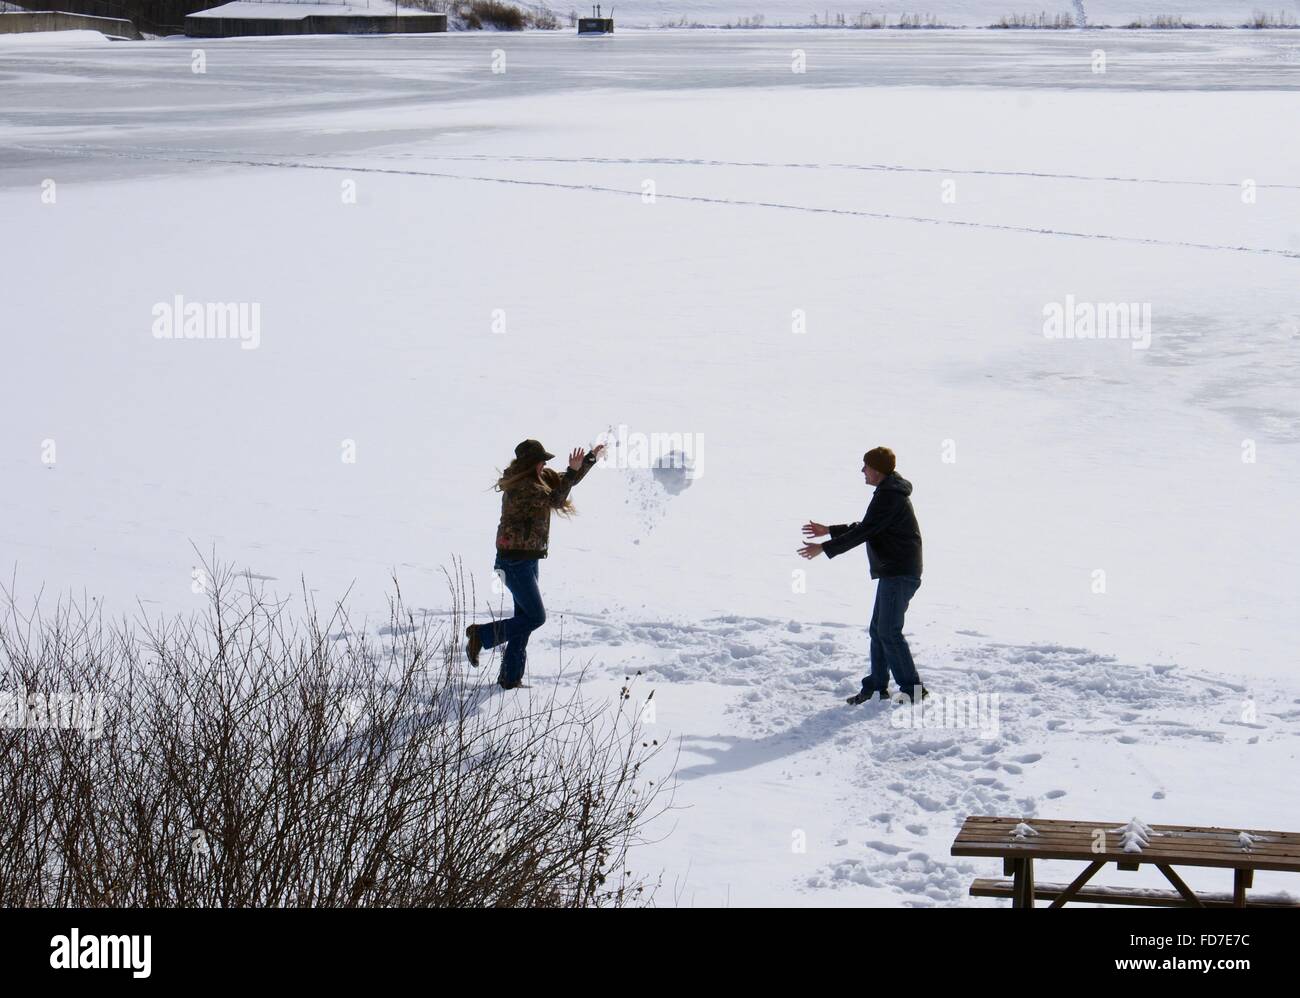 Junge Menschen spielen auf einem zugefrorenen See, einen großen Schnee-Ball zu werfen. Stockfoto